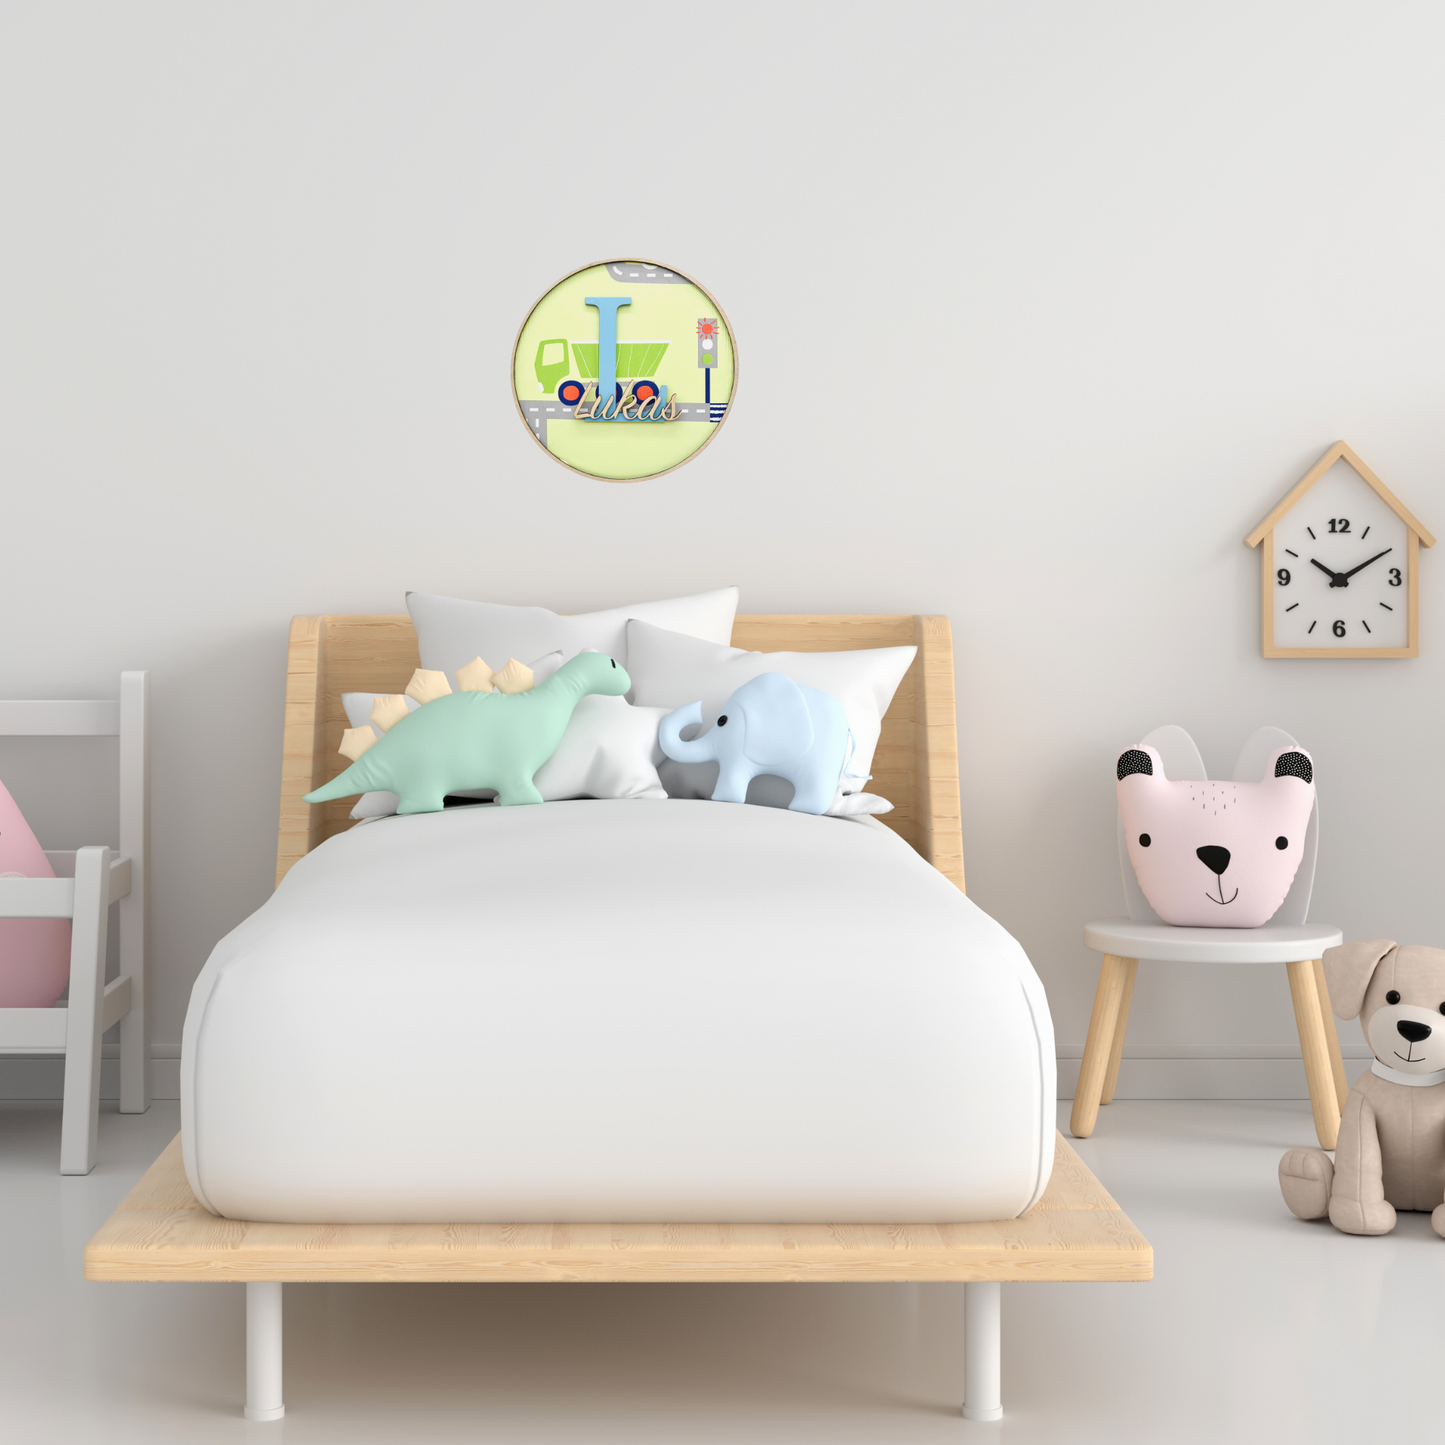 Holzschild Kinderzimmer - Türschild Name mit Initial Holz - Wanddeko fürs Kinderzimmer - Geschenk Geburt - Kinderzimmerschild personalisiert